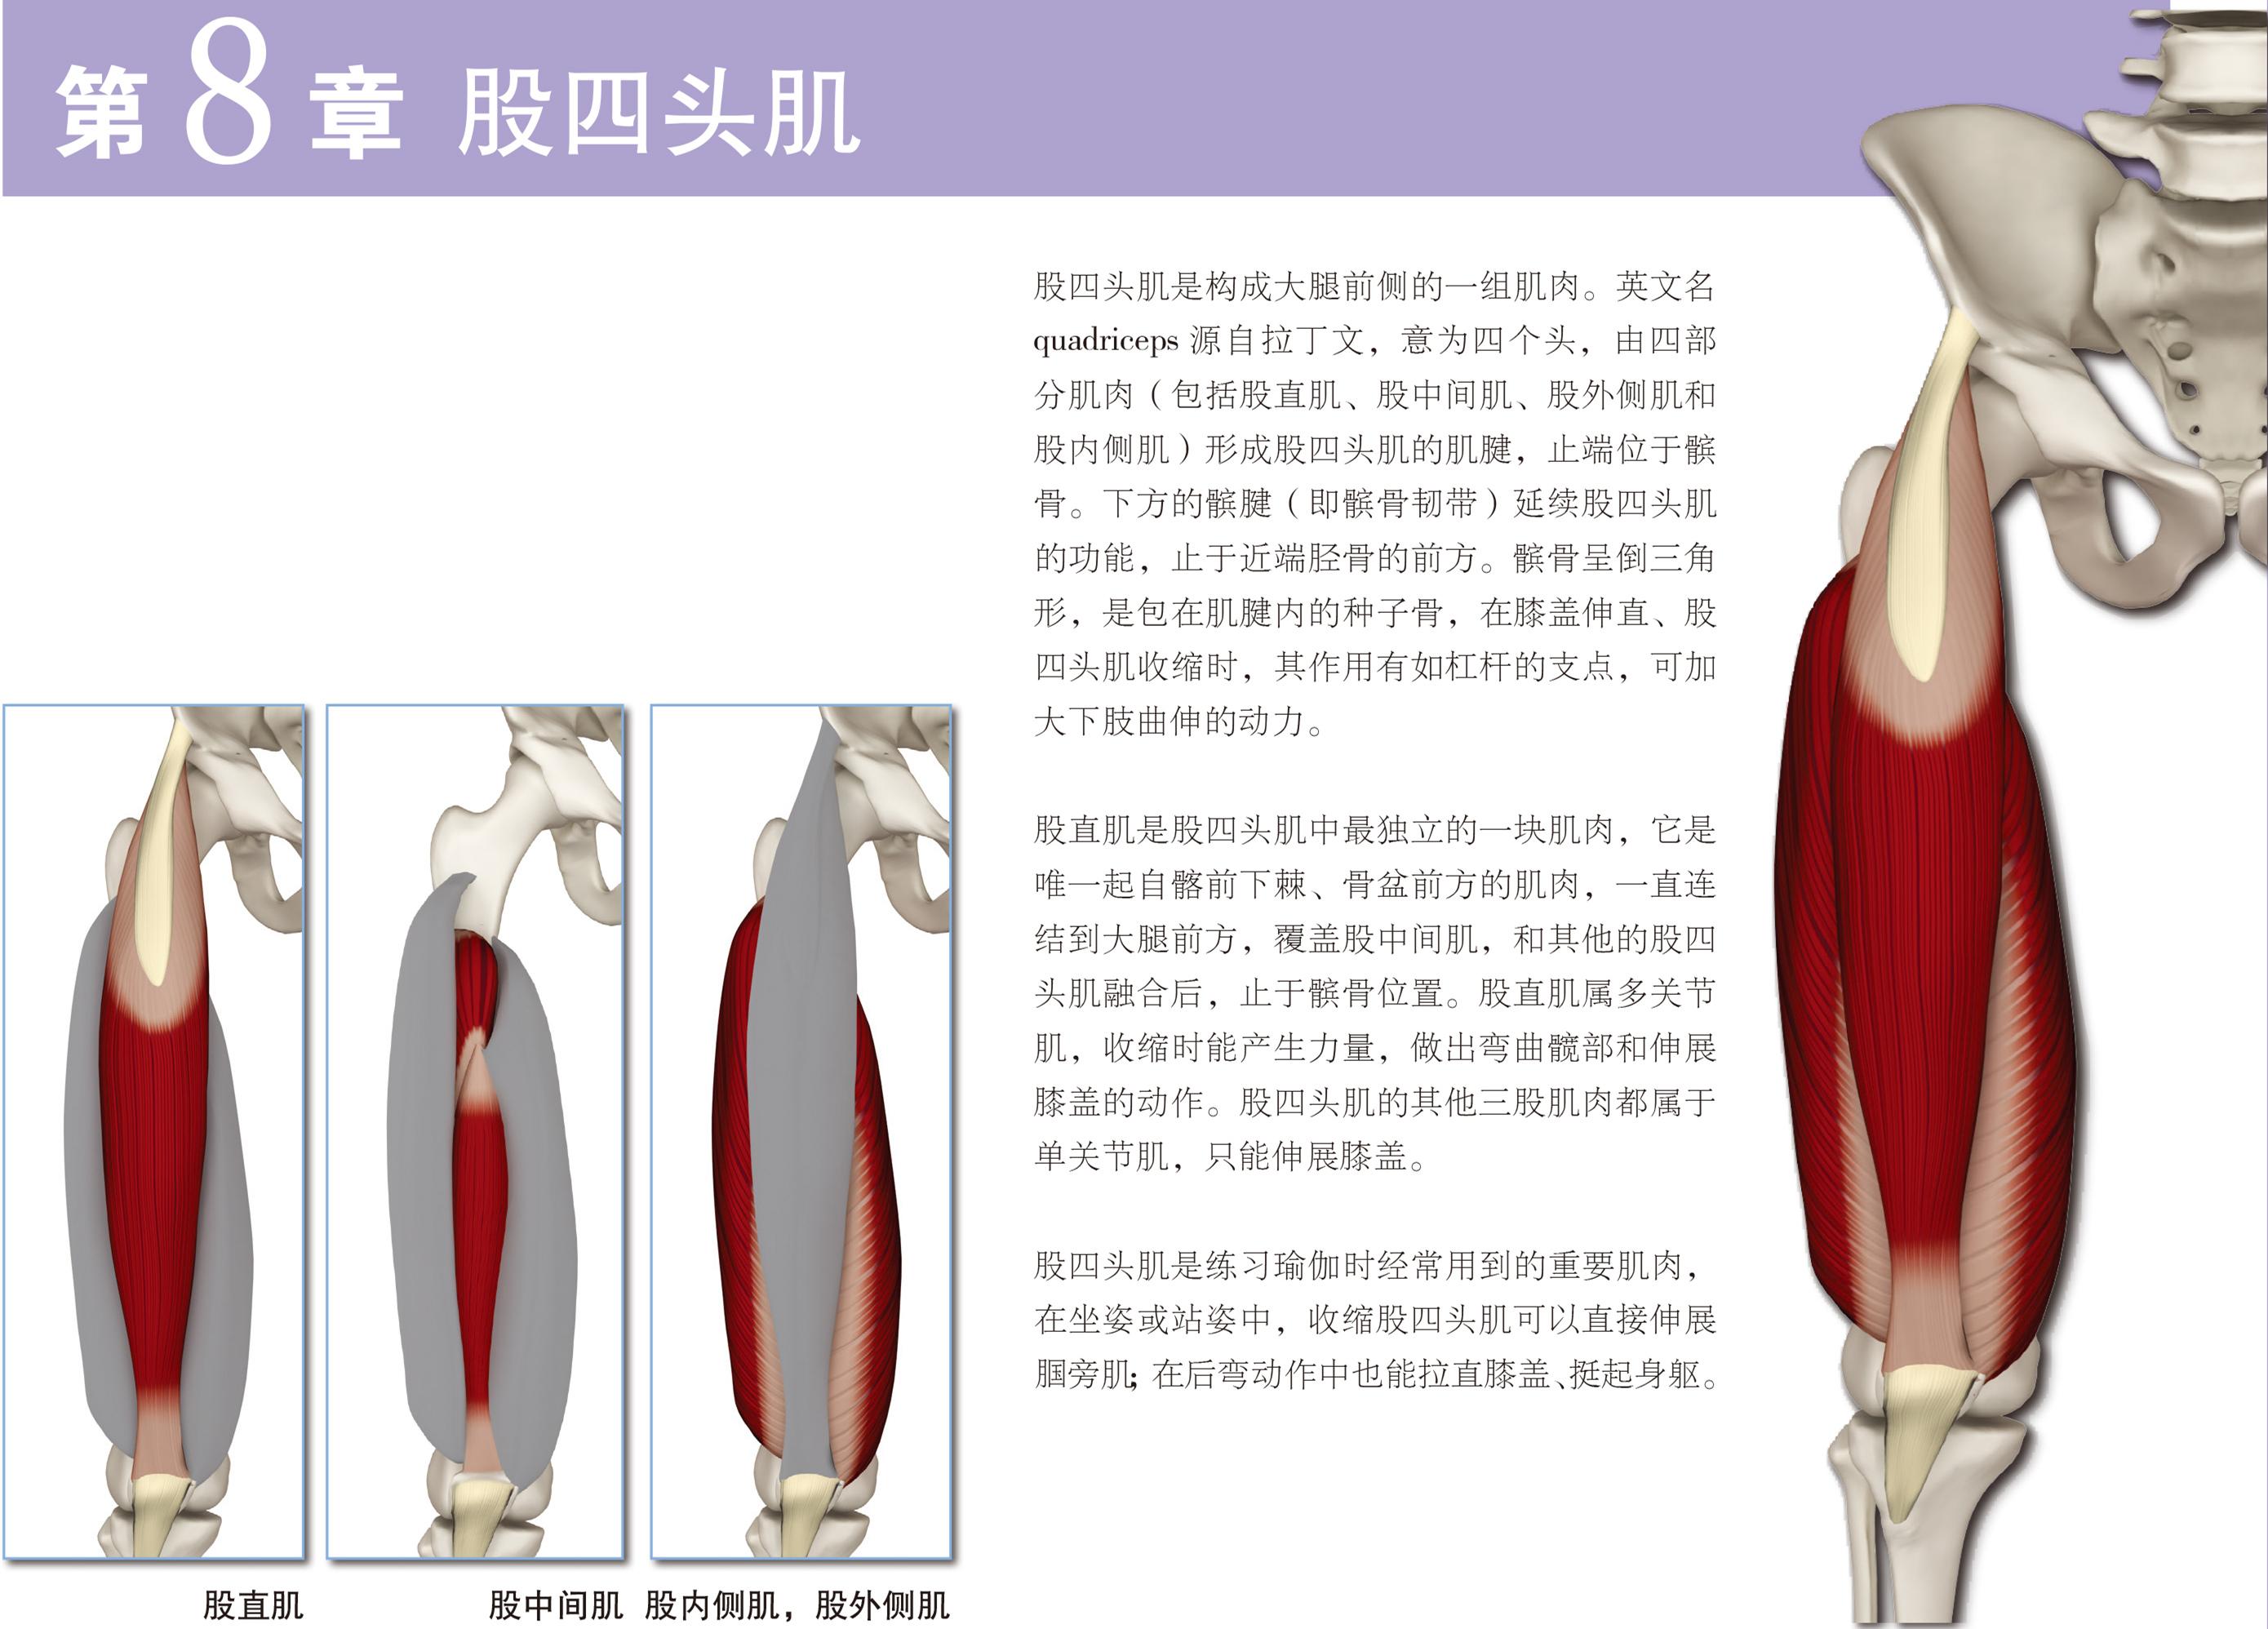 收藏 | 最全膝关节解剖汇总 学术资讯 - 科界